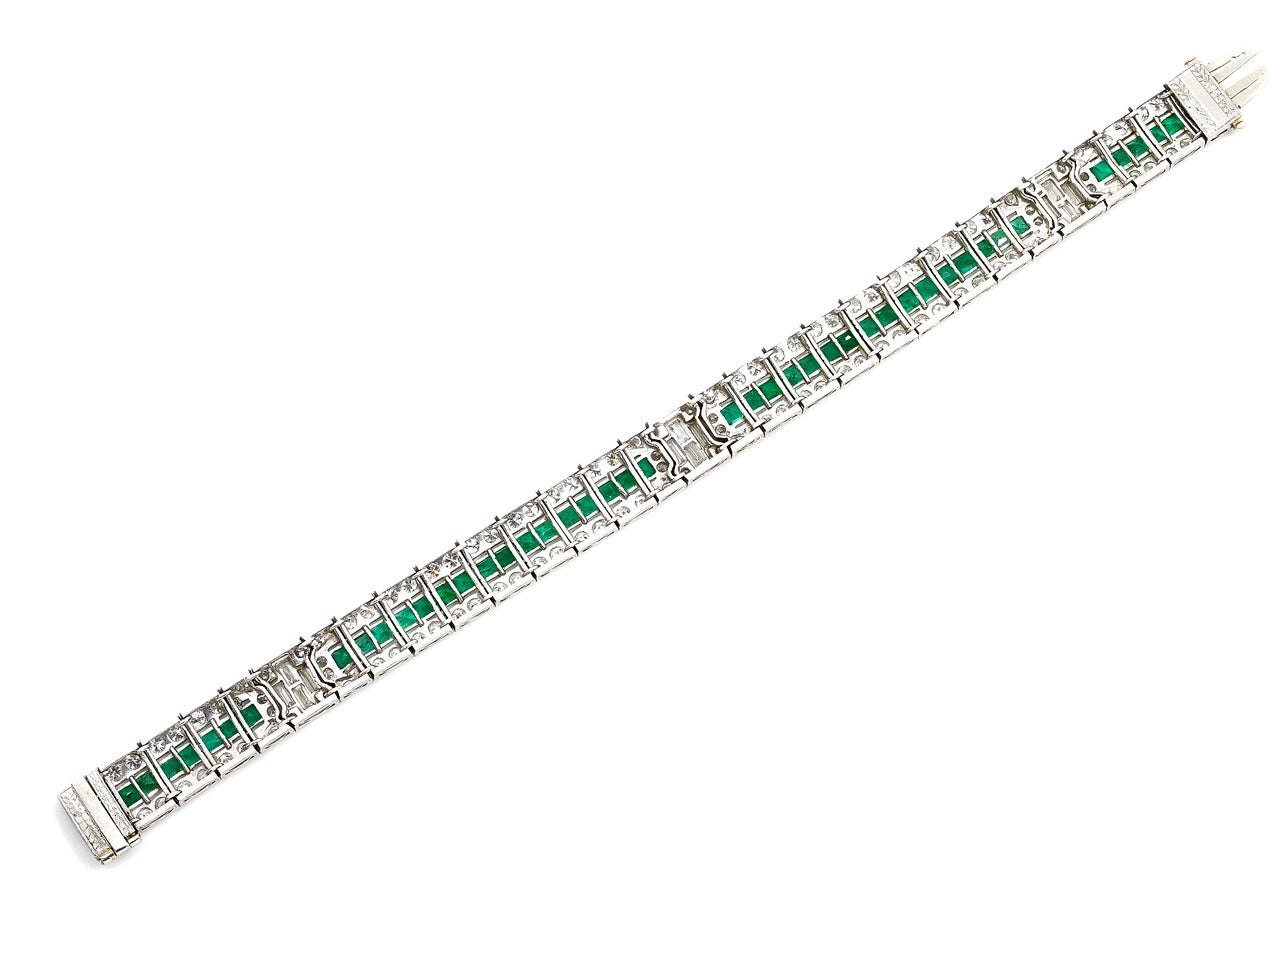 Art Deco Emerald and Diamond Bracelet in Platinum